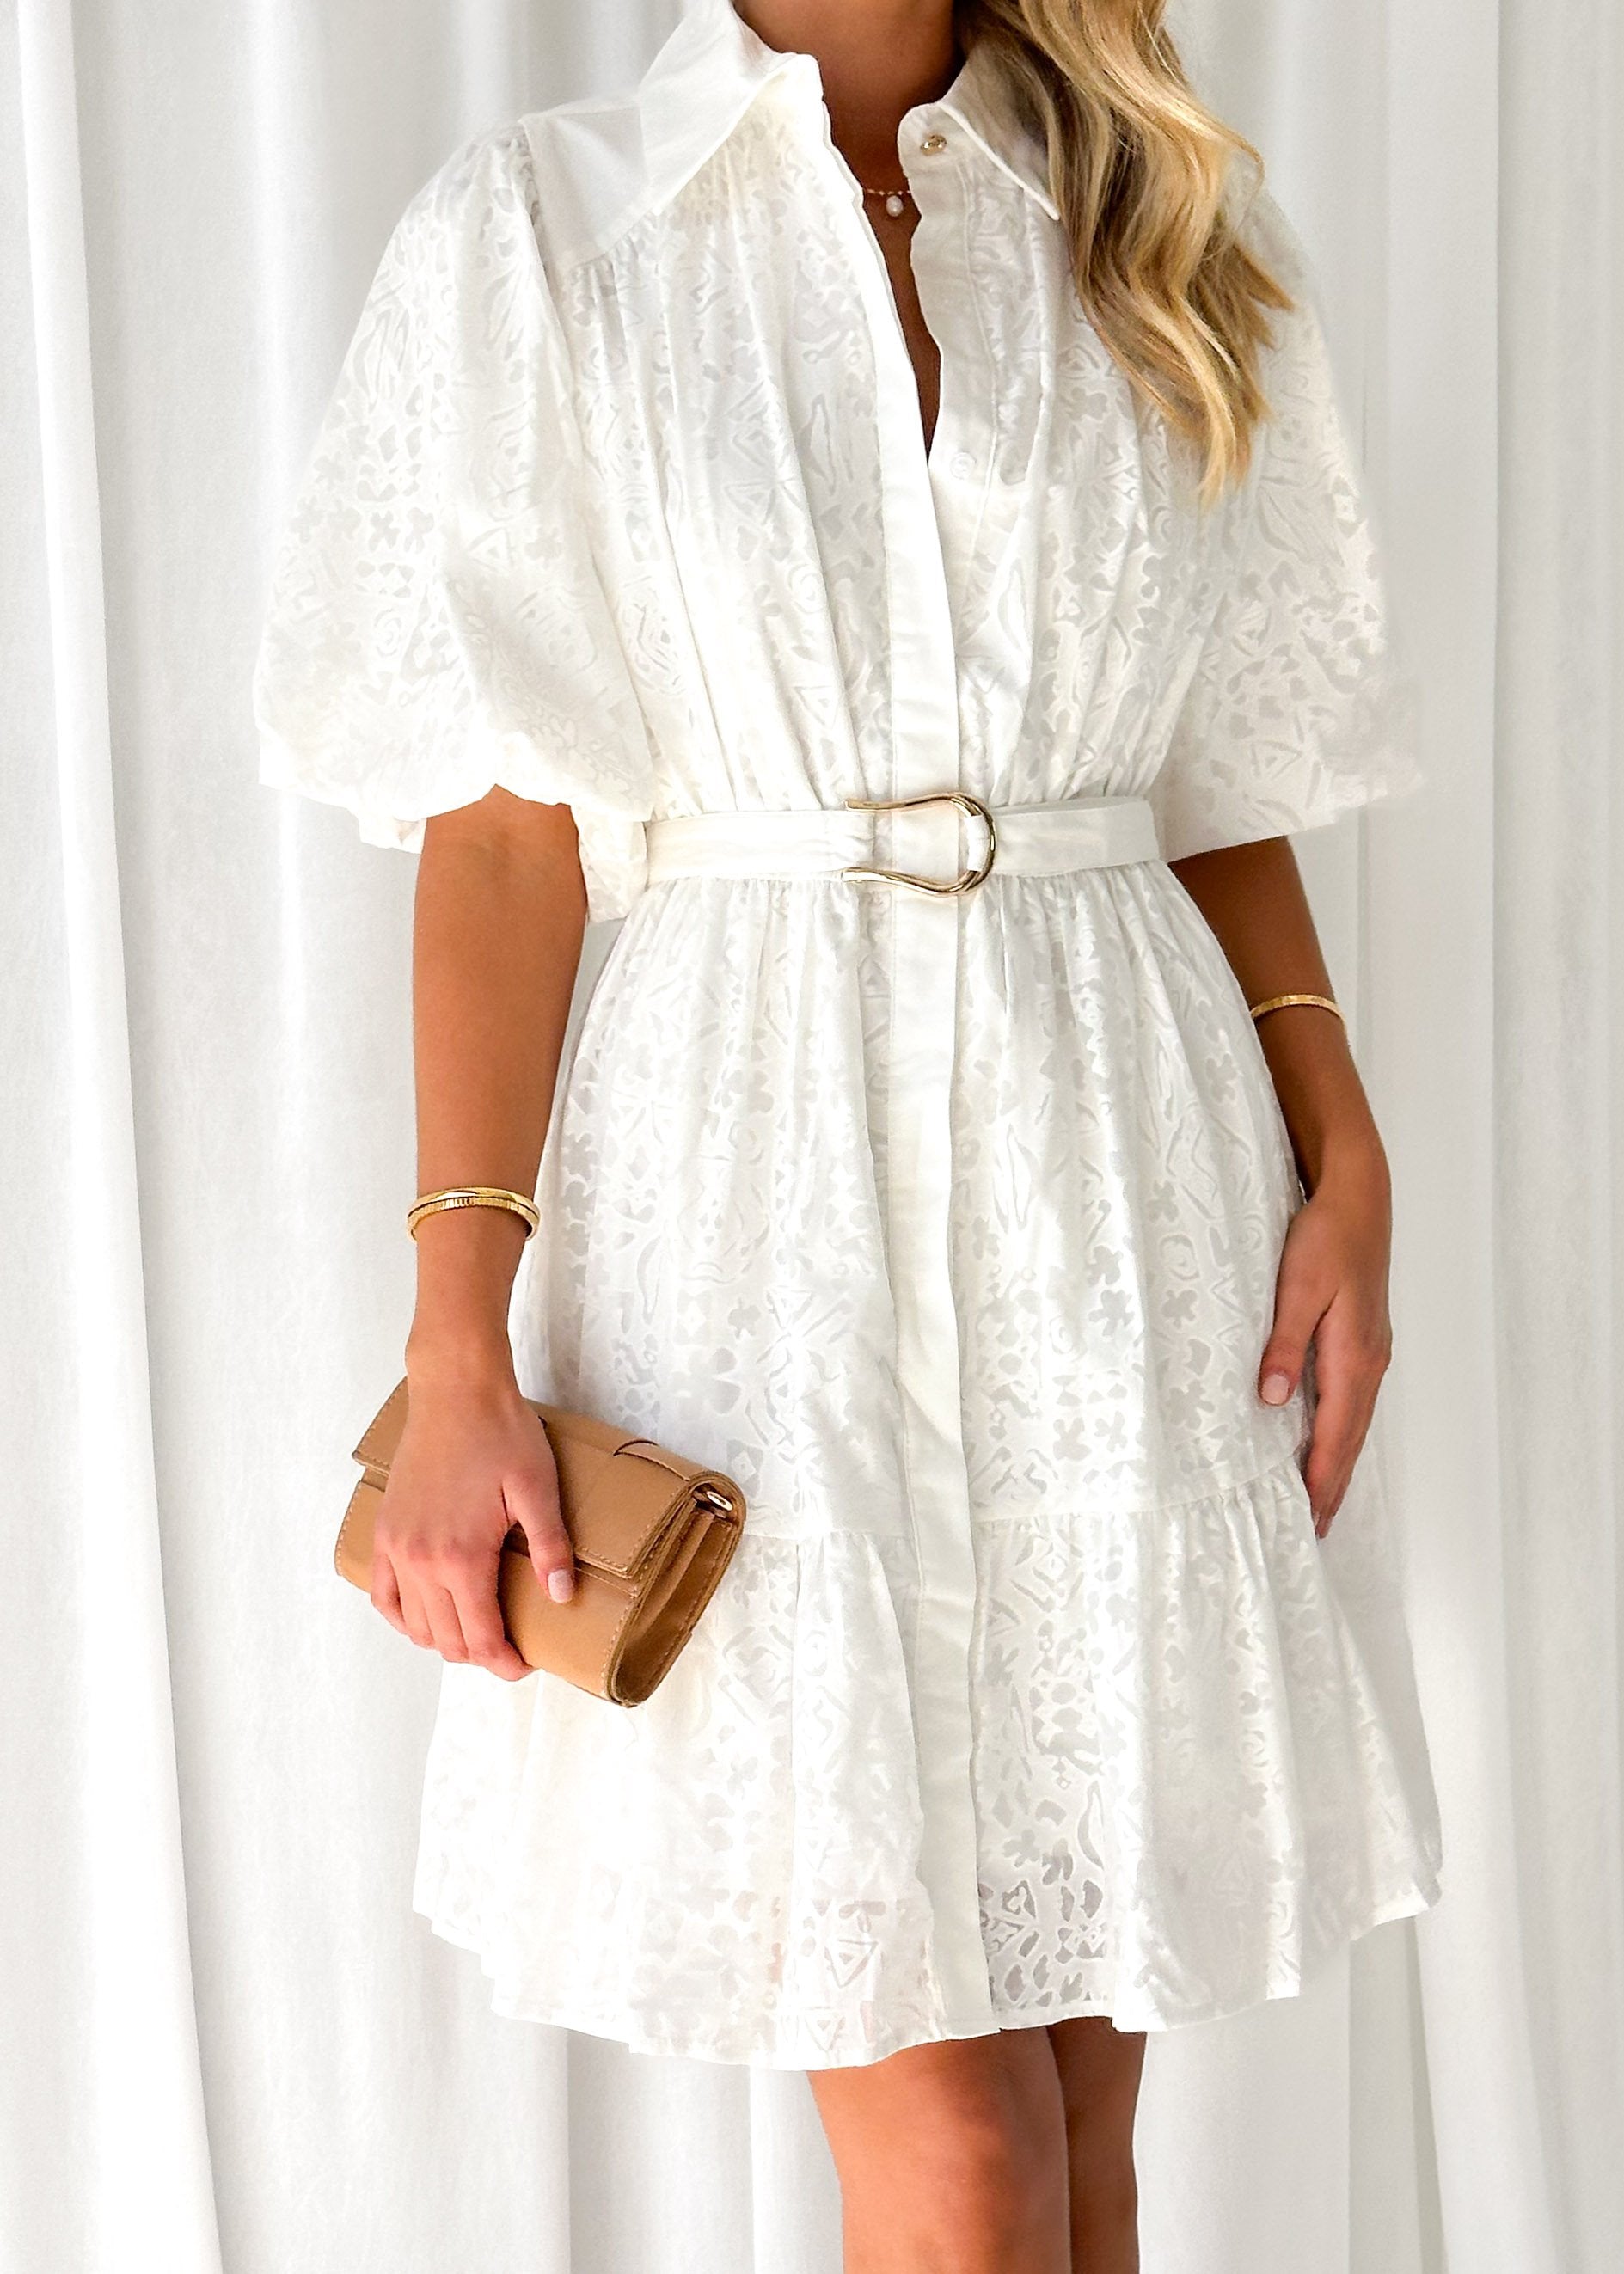 Julane Dress - Off White